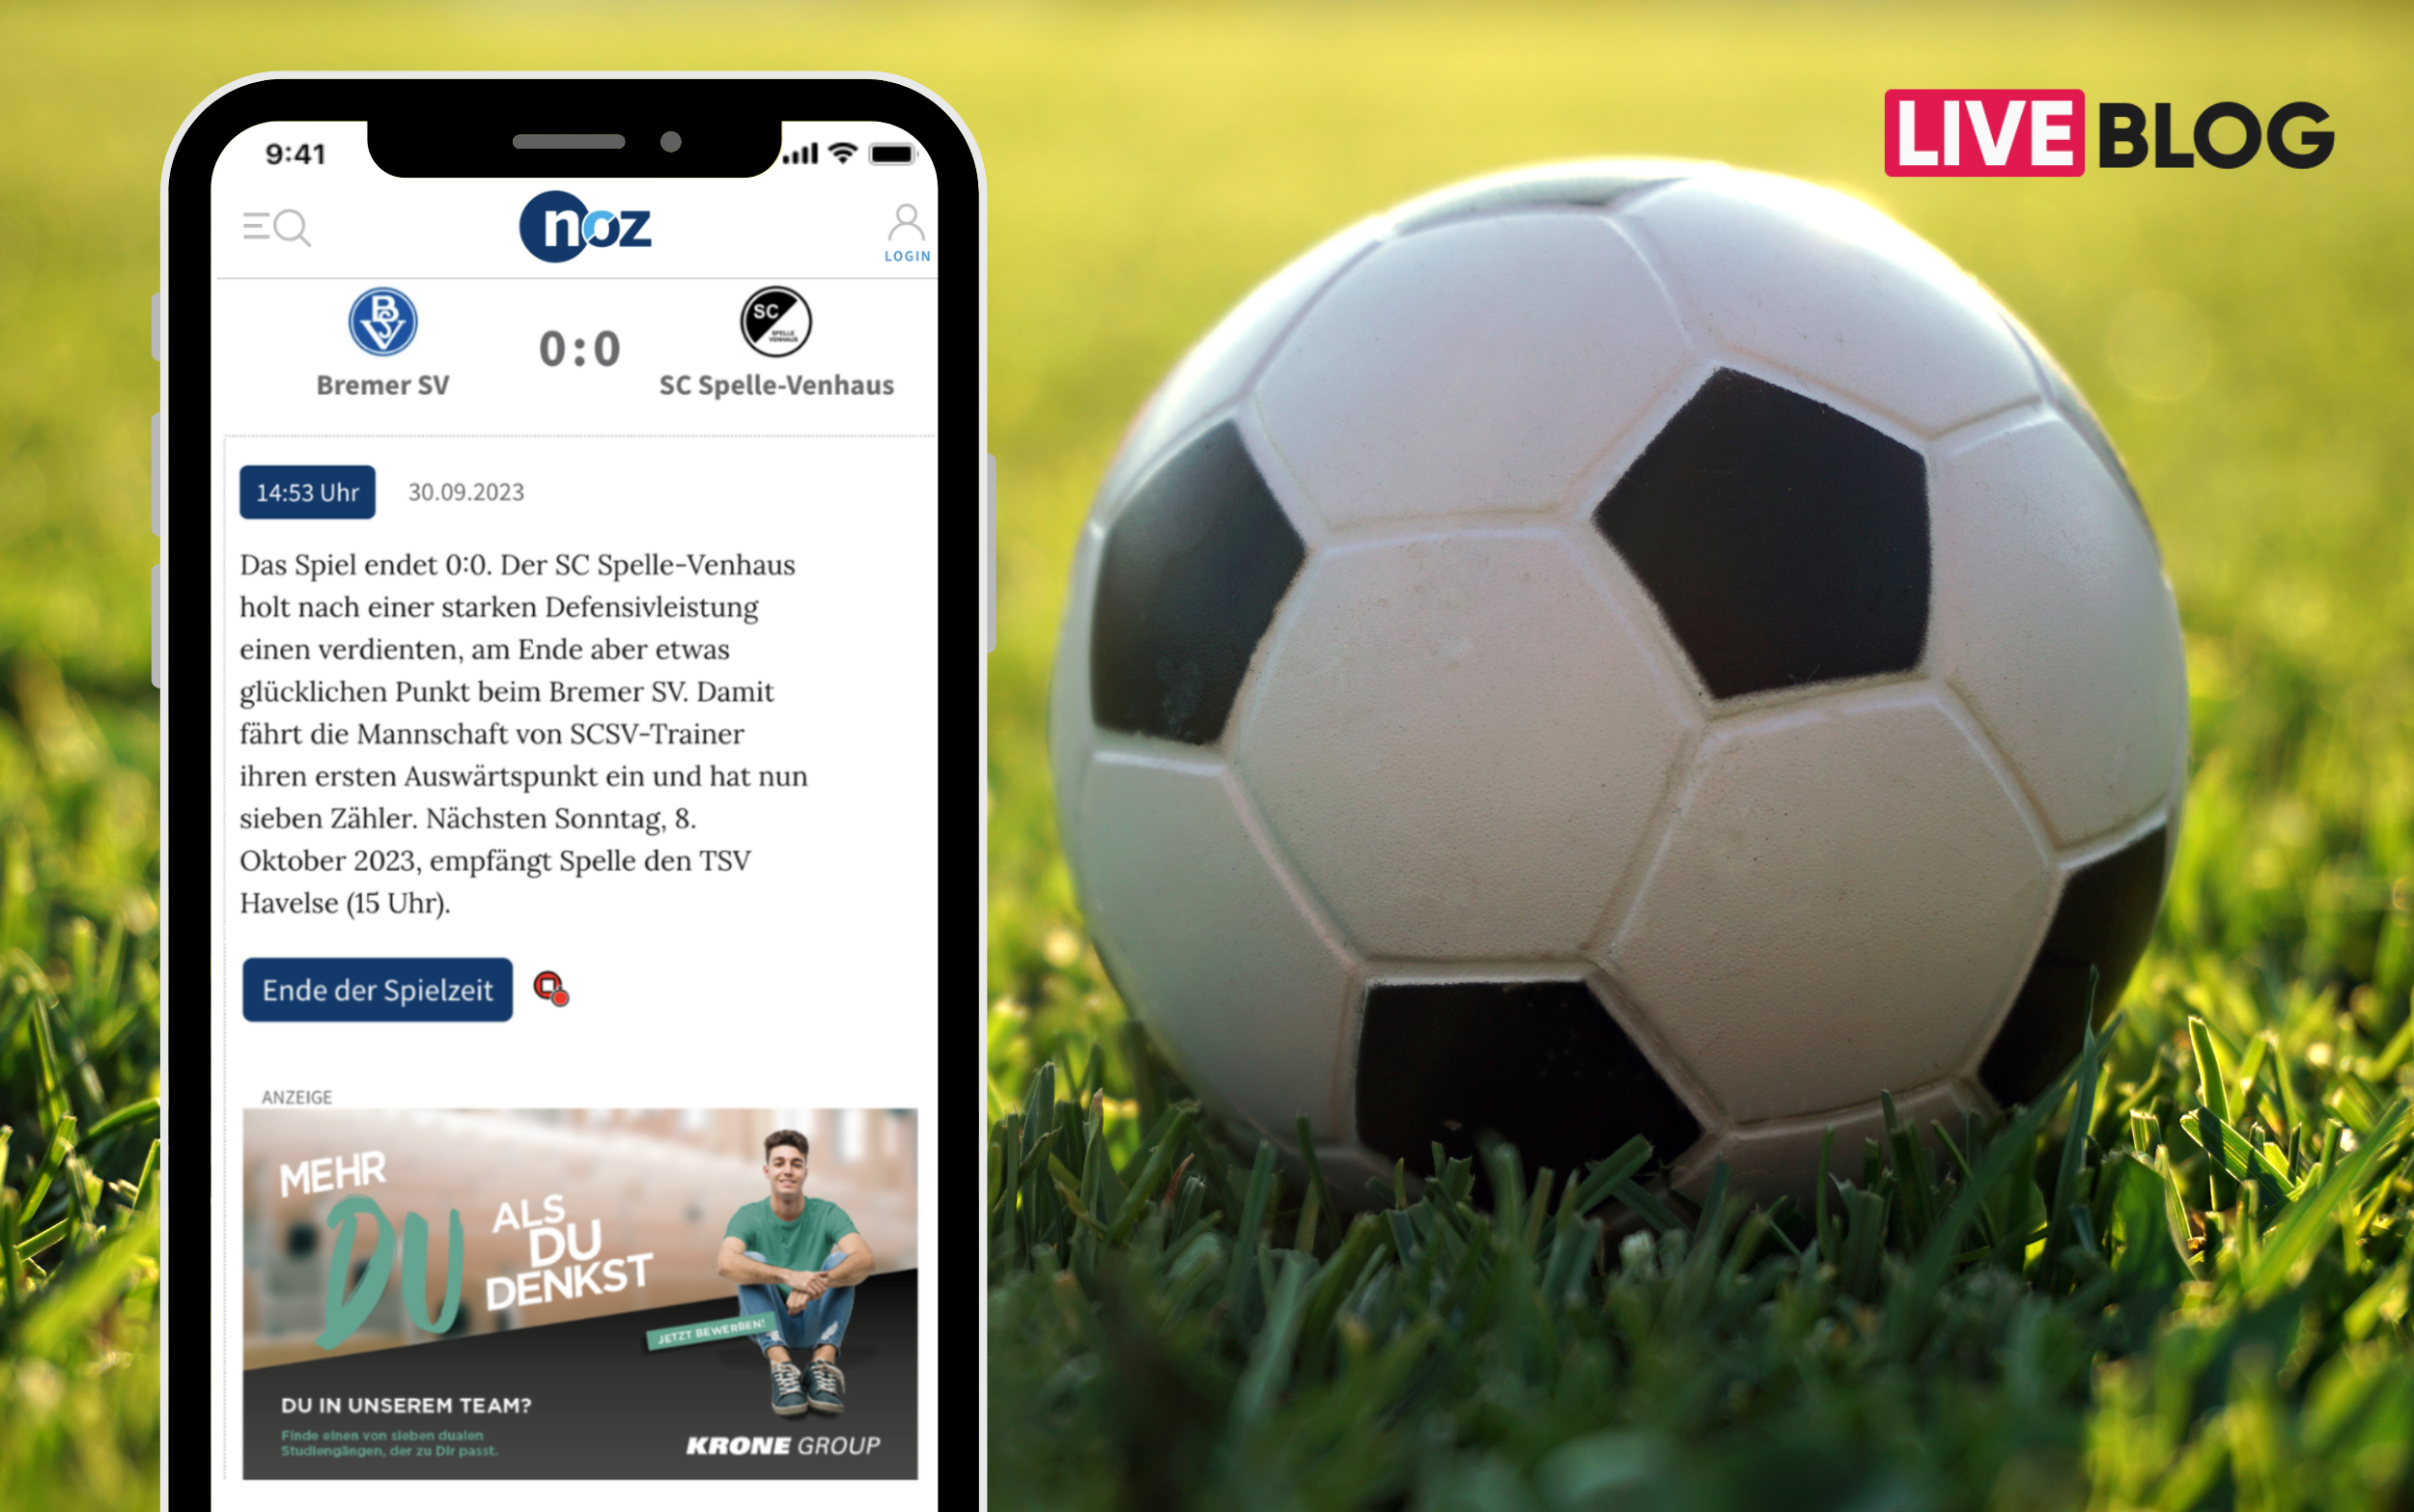 Ein Smartphone mit einem Tickaroo Liveblog über ein Fußballspiel neben einem Fußball. In dem Liveblog befindet sich nach dem Spielstand eine Anzeige.